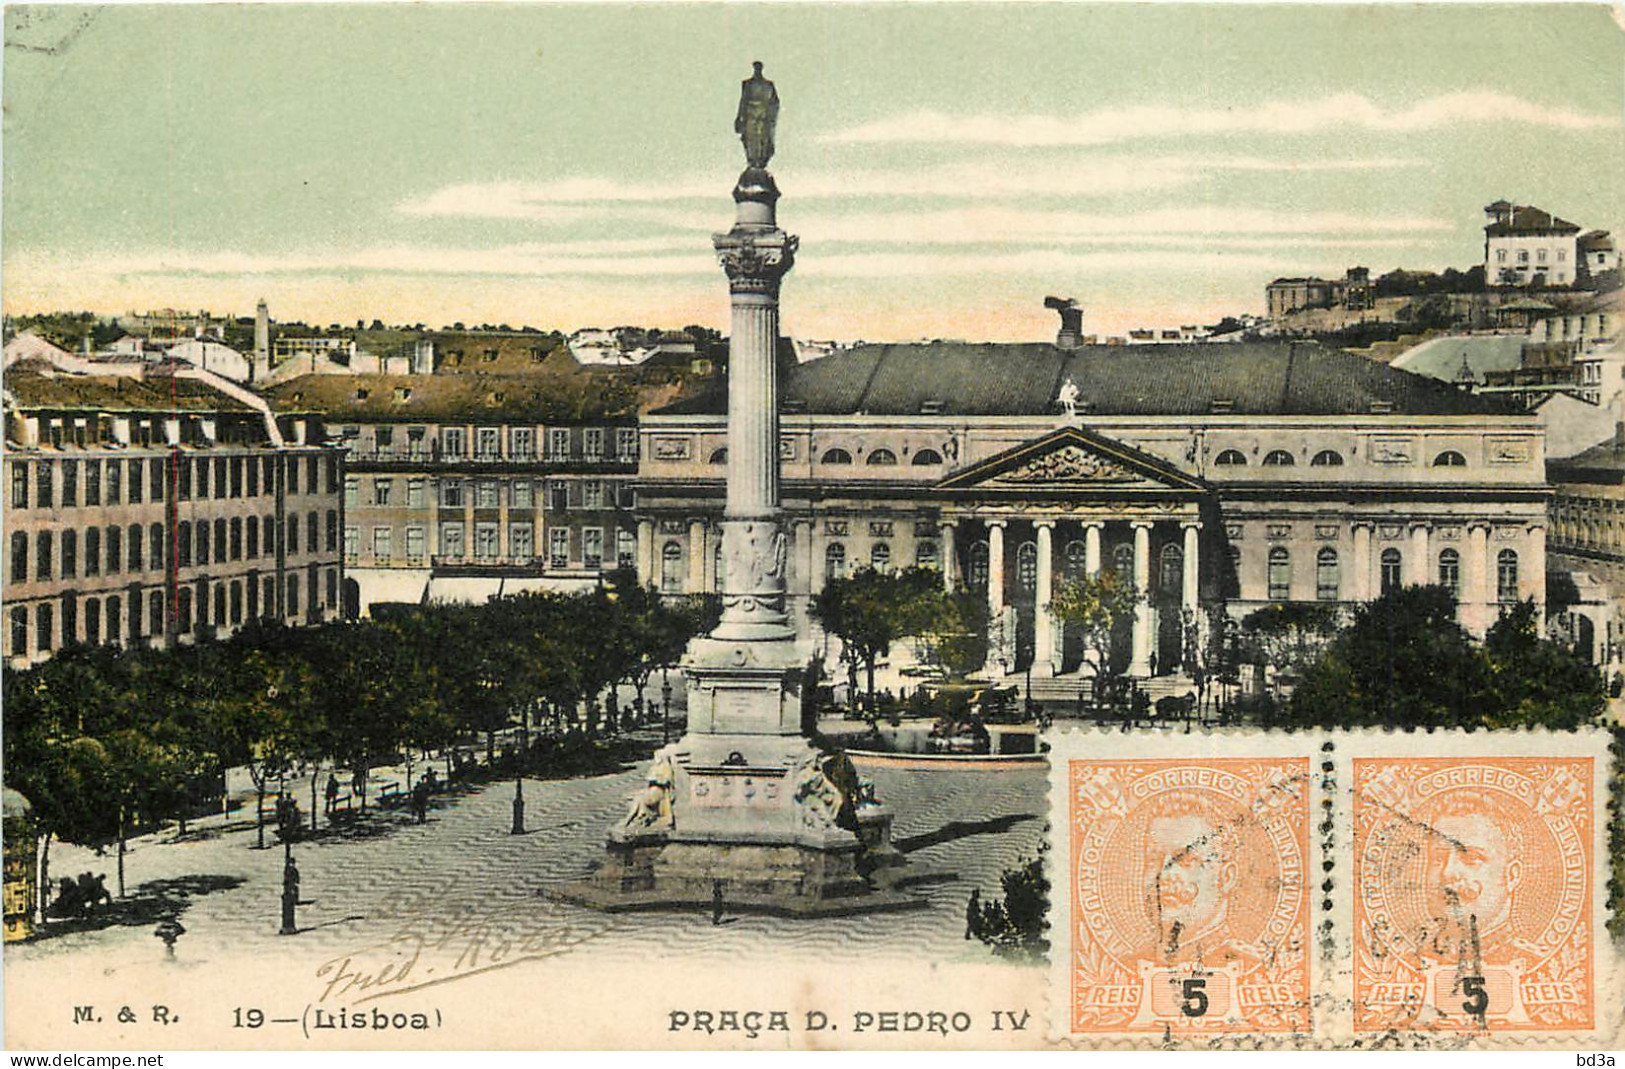  PORTUGAL  LISBOA   Praça D. Pedro IV - Lisboa